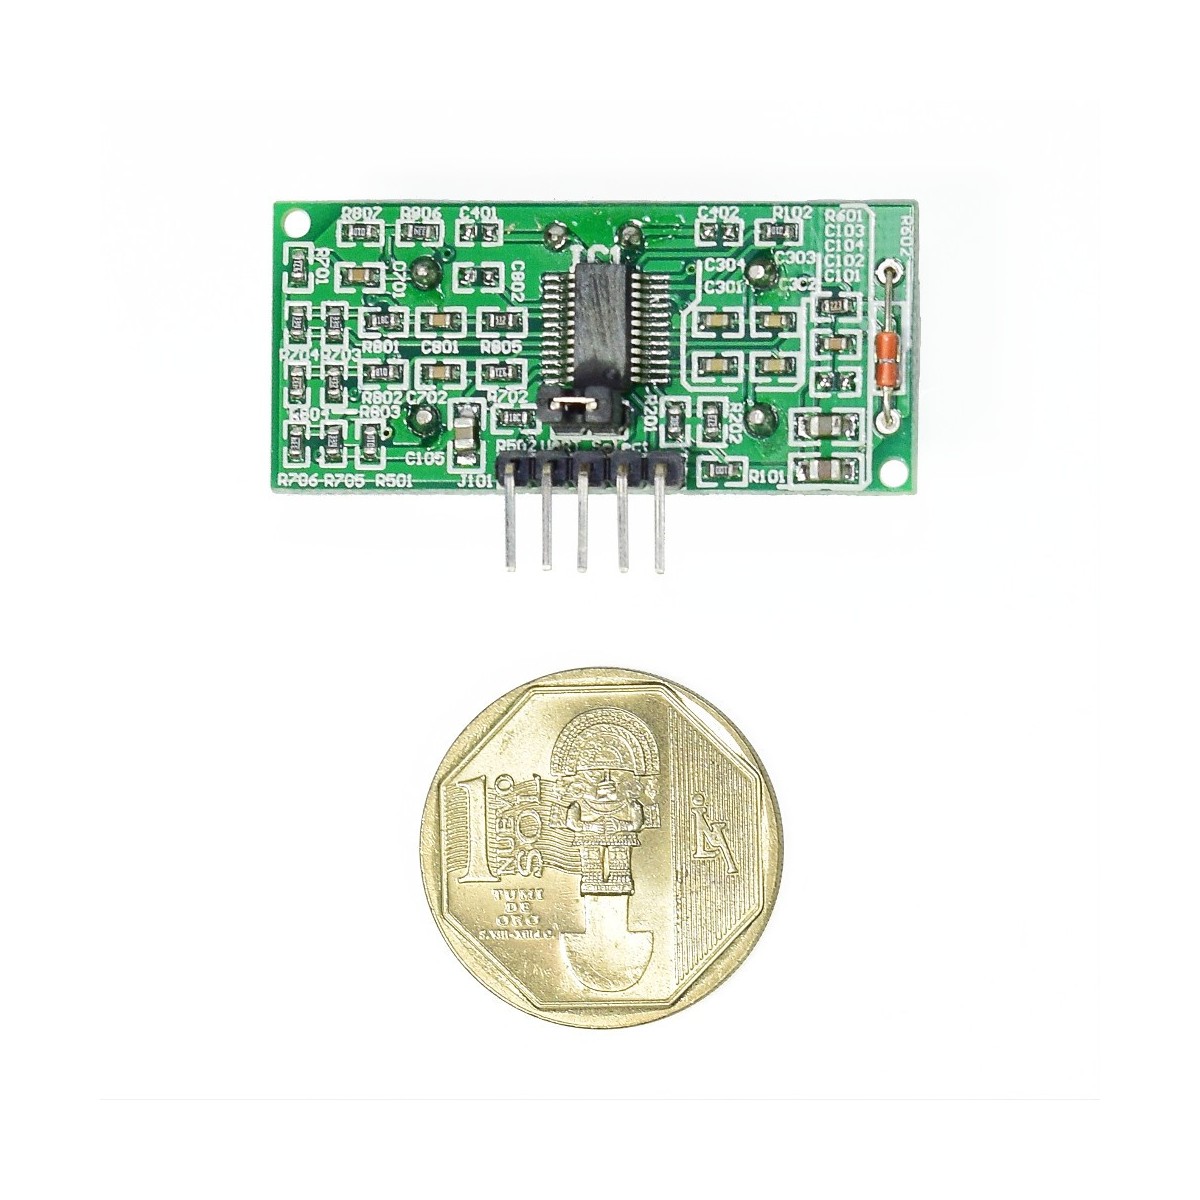 UP 258D61 - Detector de presencia WIDE UP 258D61 con sensor de temperatura.  Detector ultrasonidos con sensores PIR adicionales.